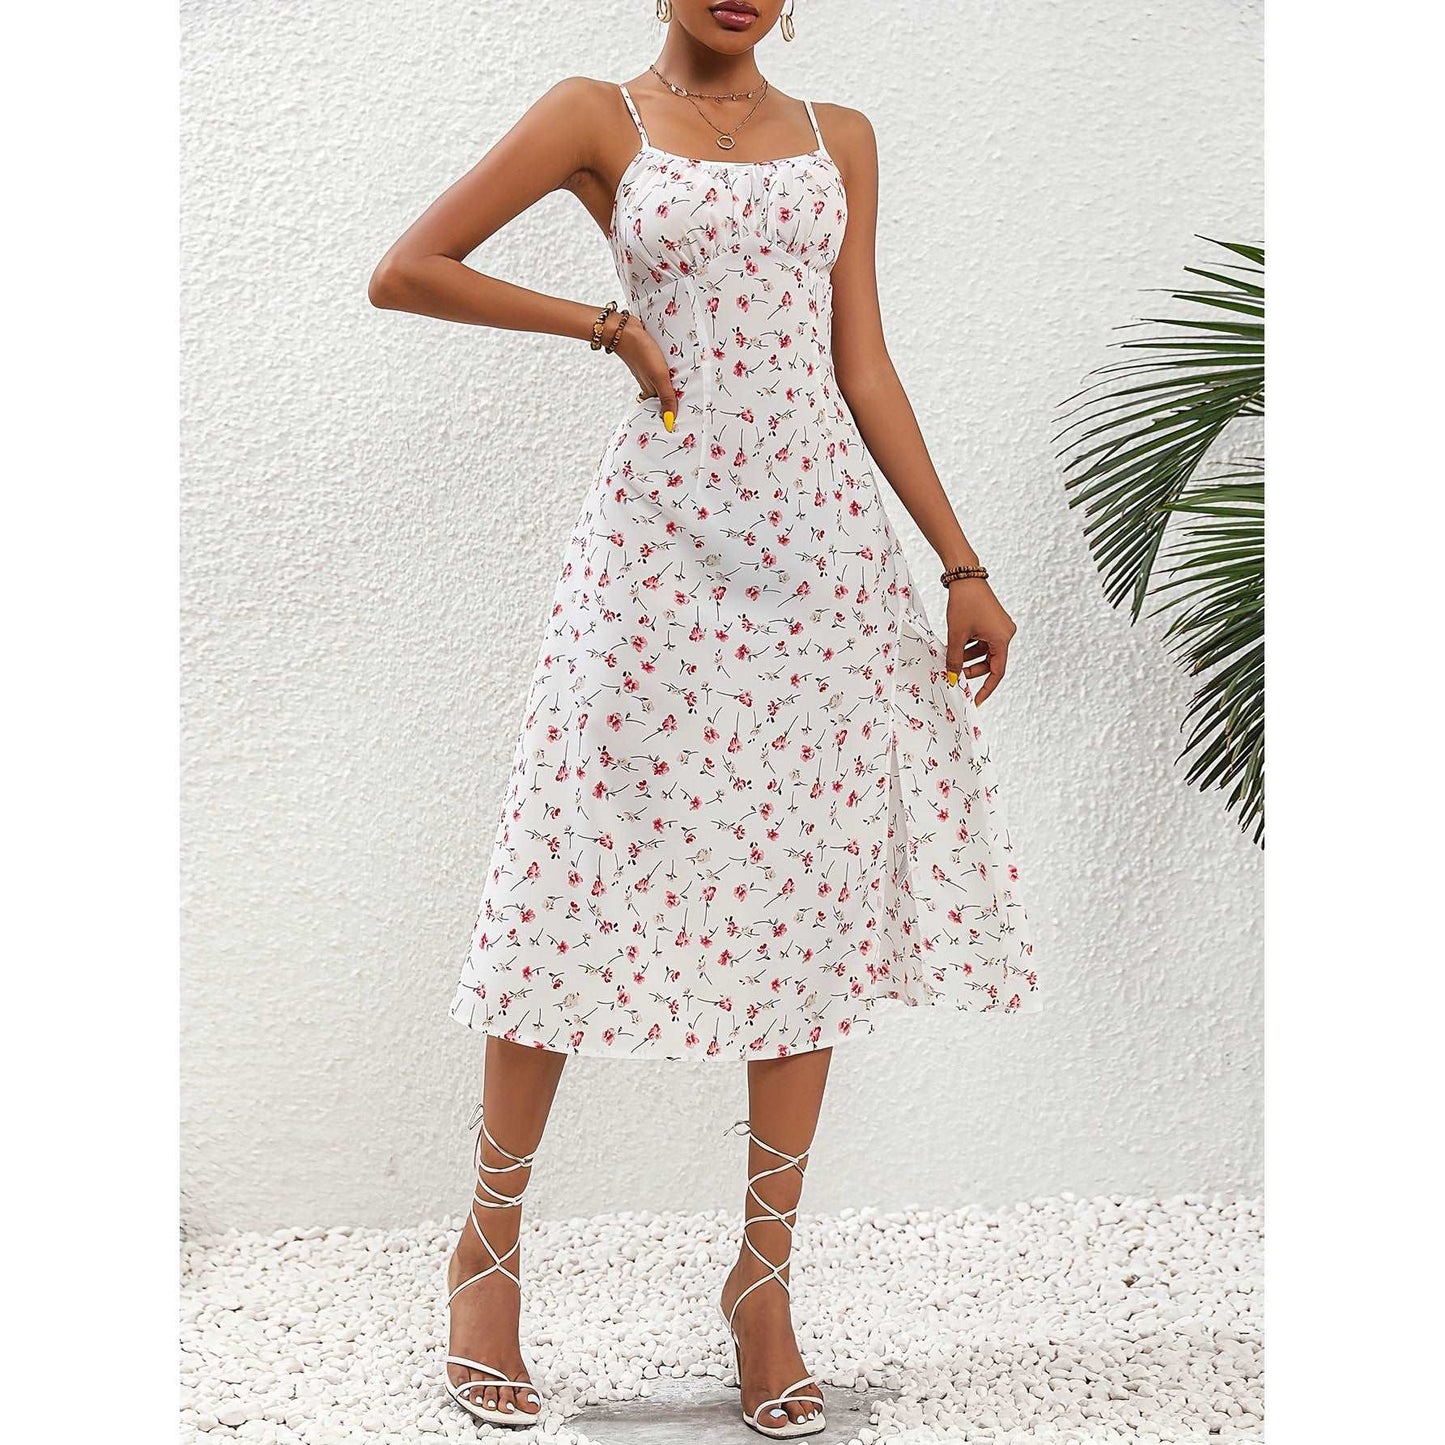 Women's Polka Dot Print Long Suspender Dress with Slit